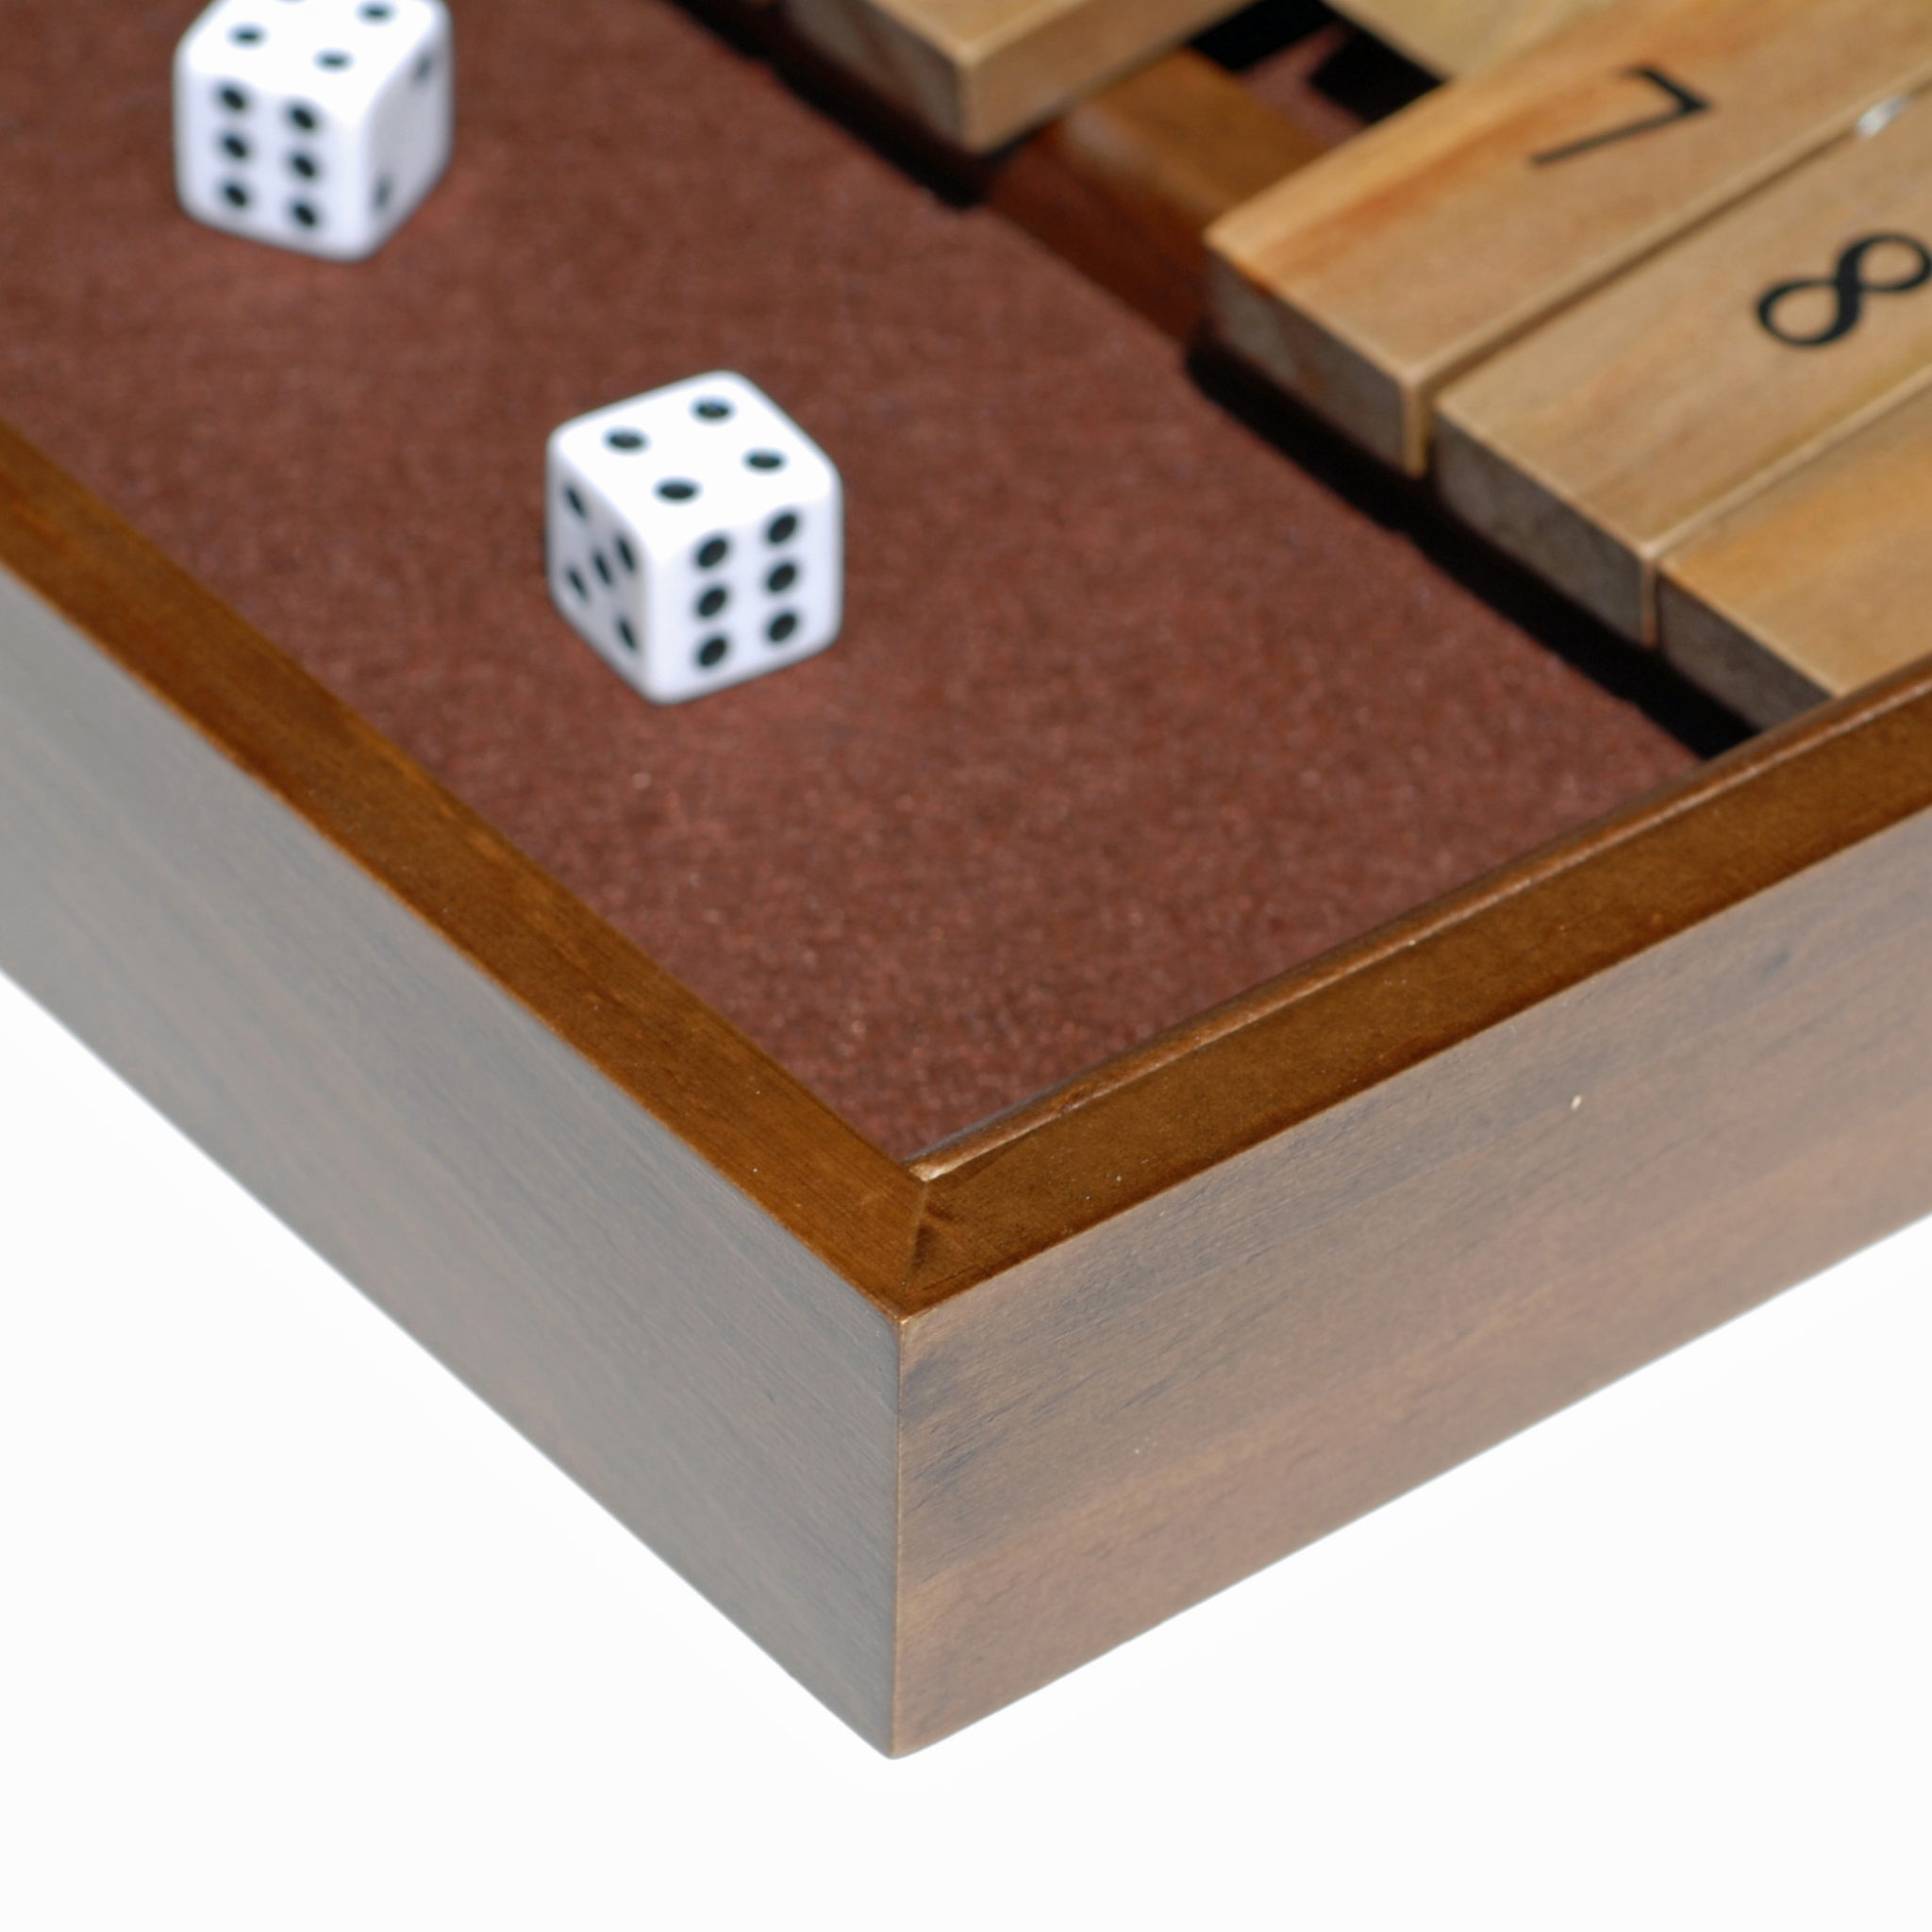 Desk Pet for dice. Board game dice solo.